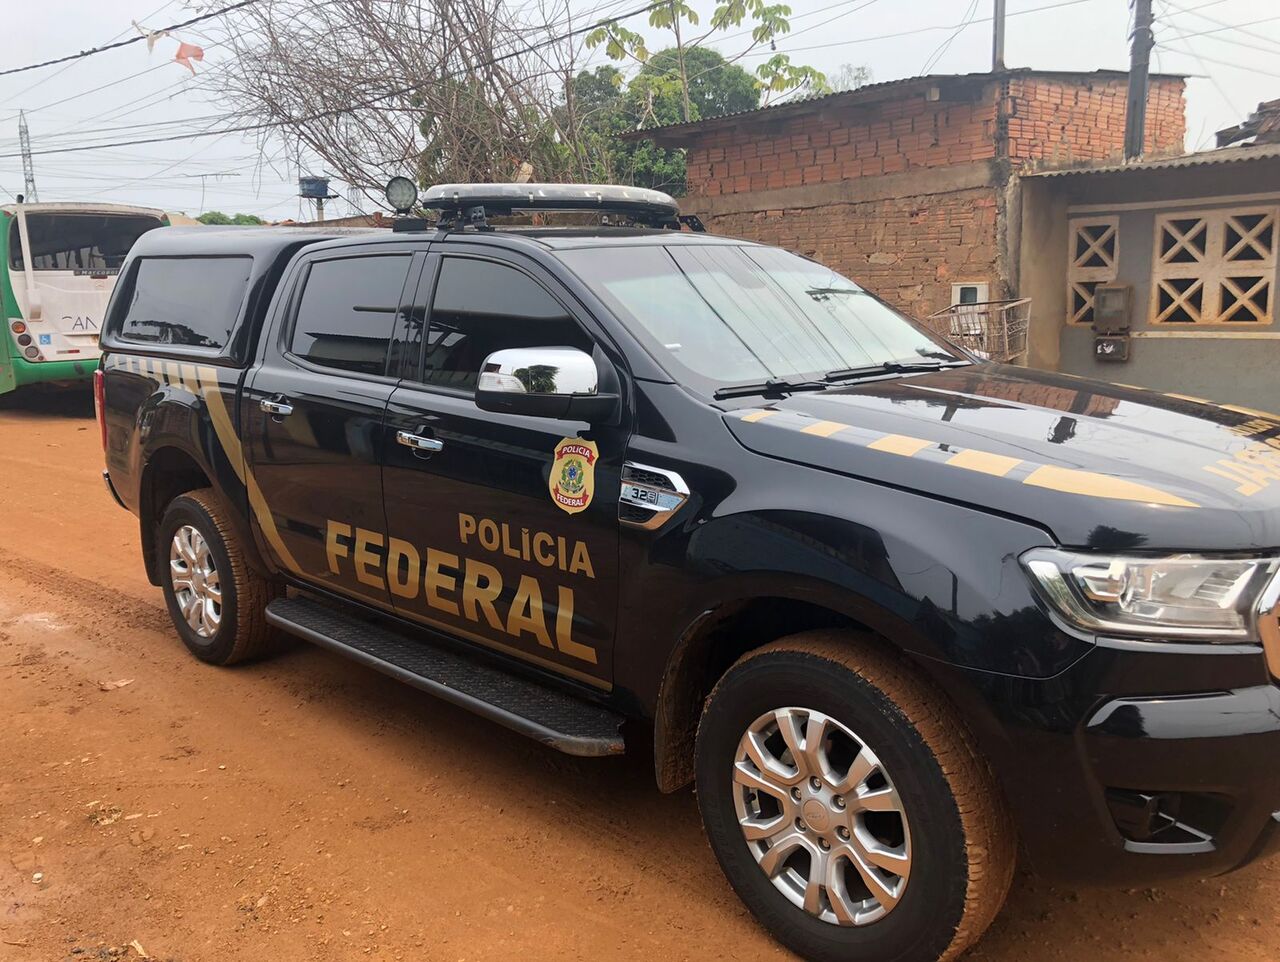 Investigado por abusos sexuais conta crianças é preso após PF constatar vários outros crimes em Rondônia